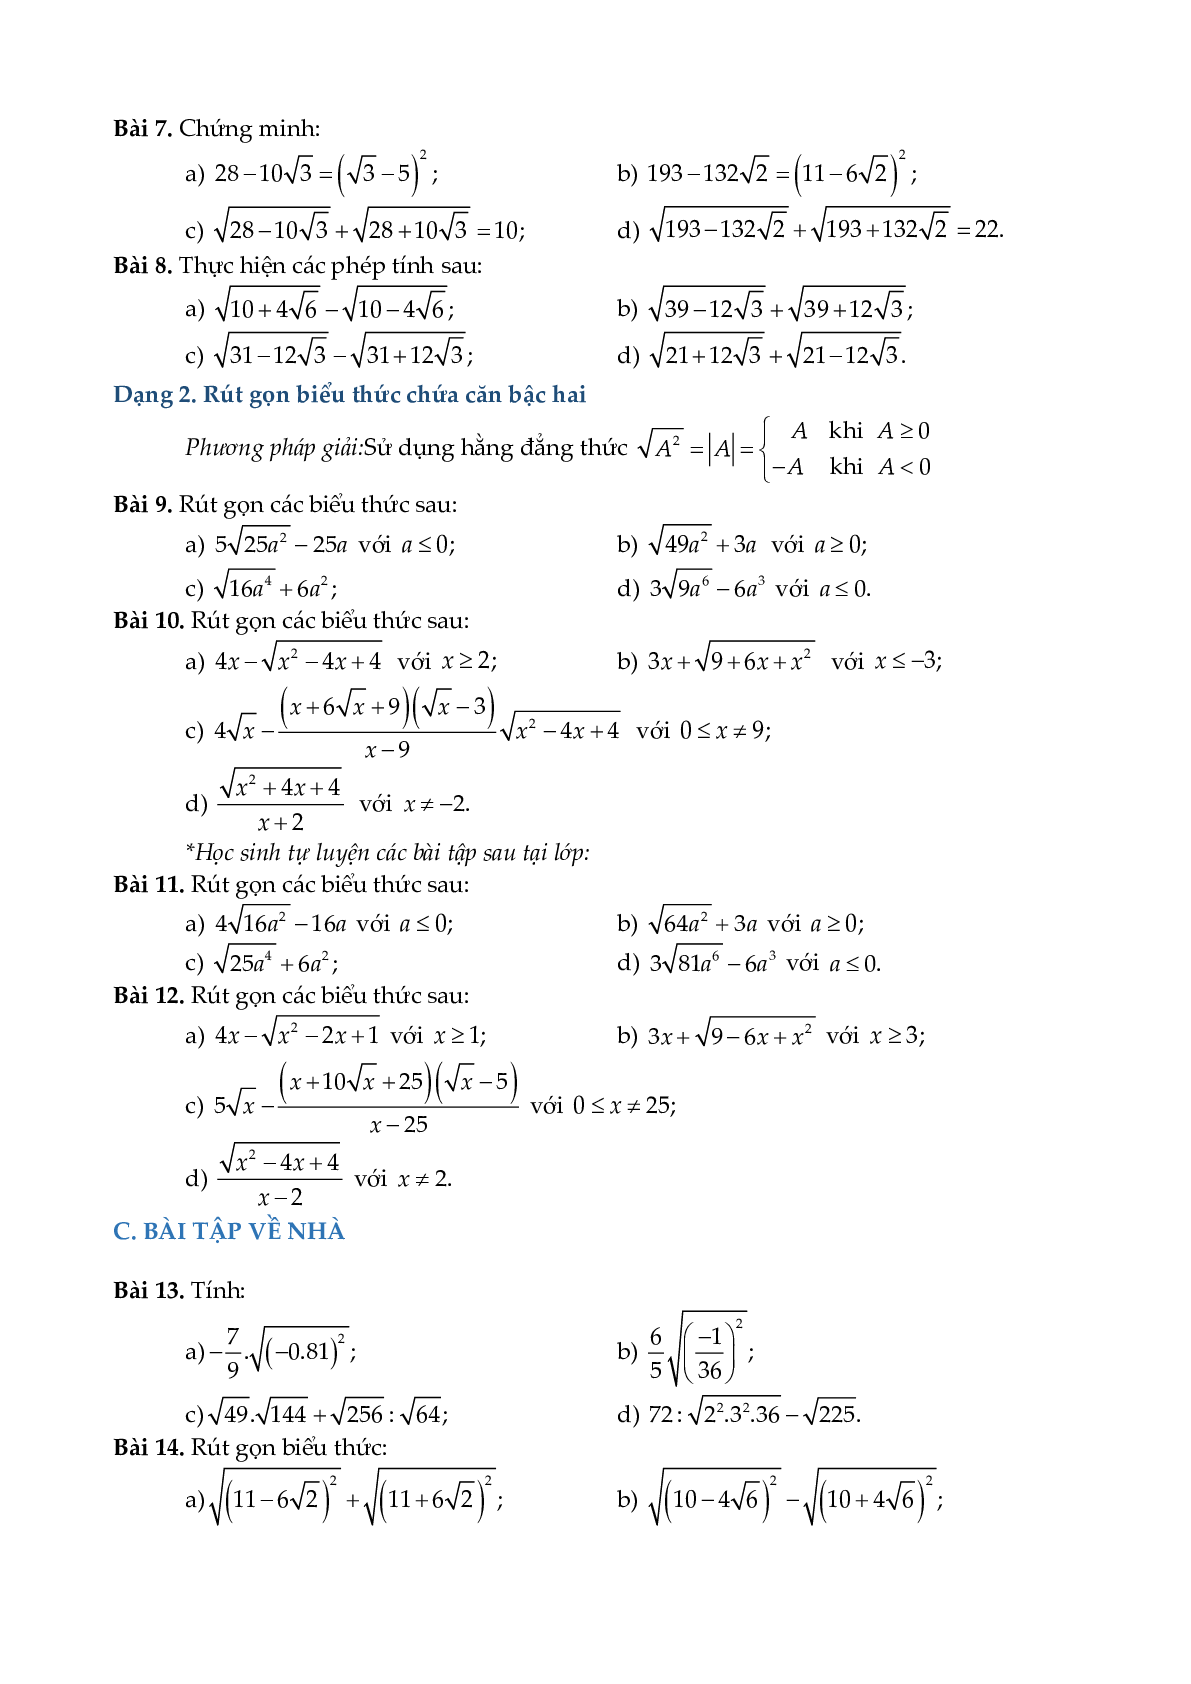 Chuyên đề rút gọn biểu thức và bài toán liên quan (trang 8)